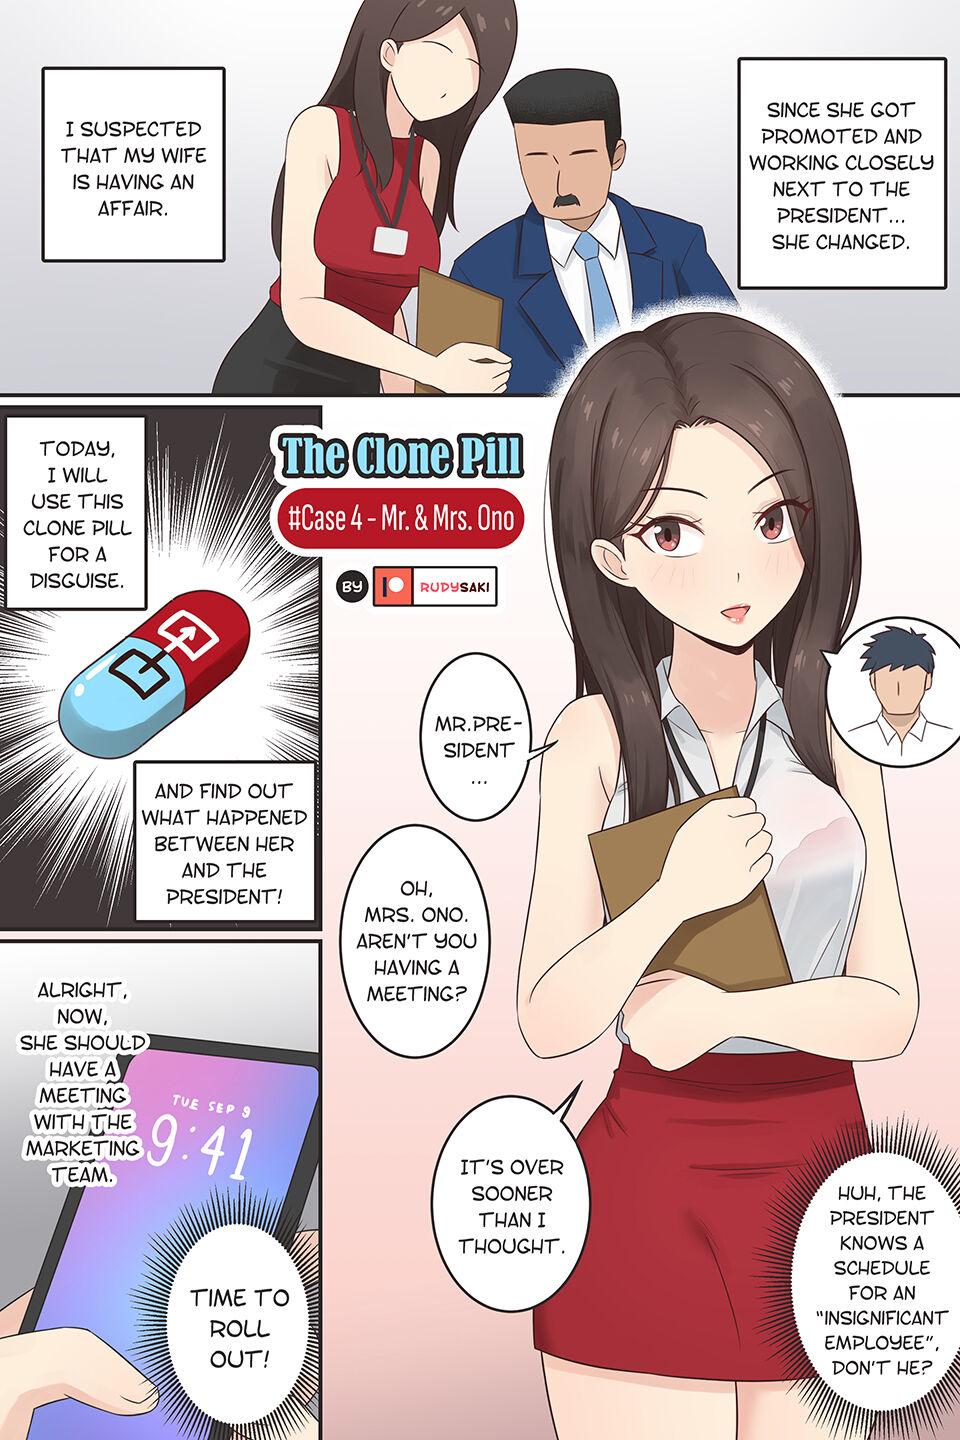 The Clone Pill Case.4 - Mr.&Mrs.Ono 1